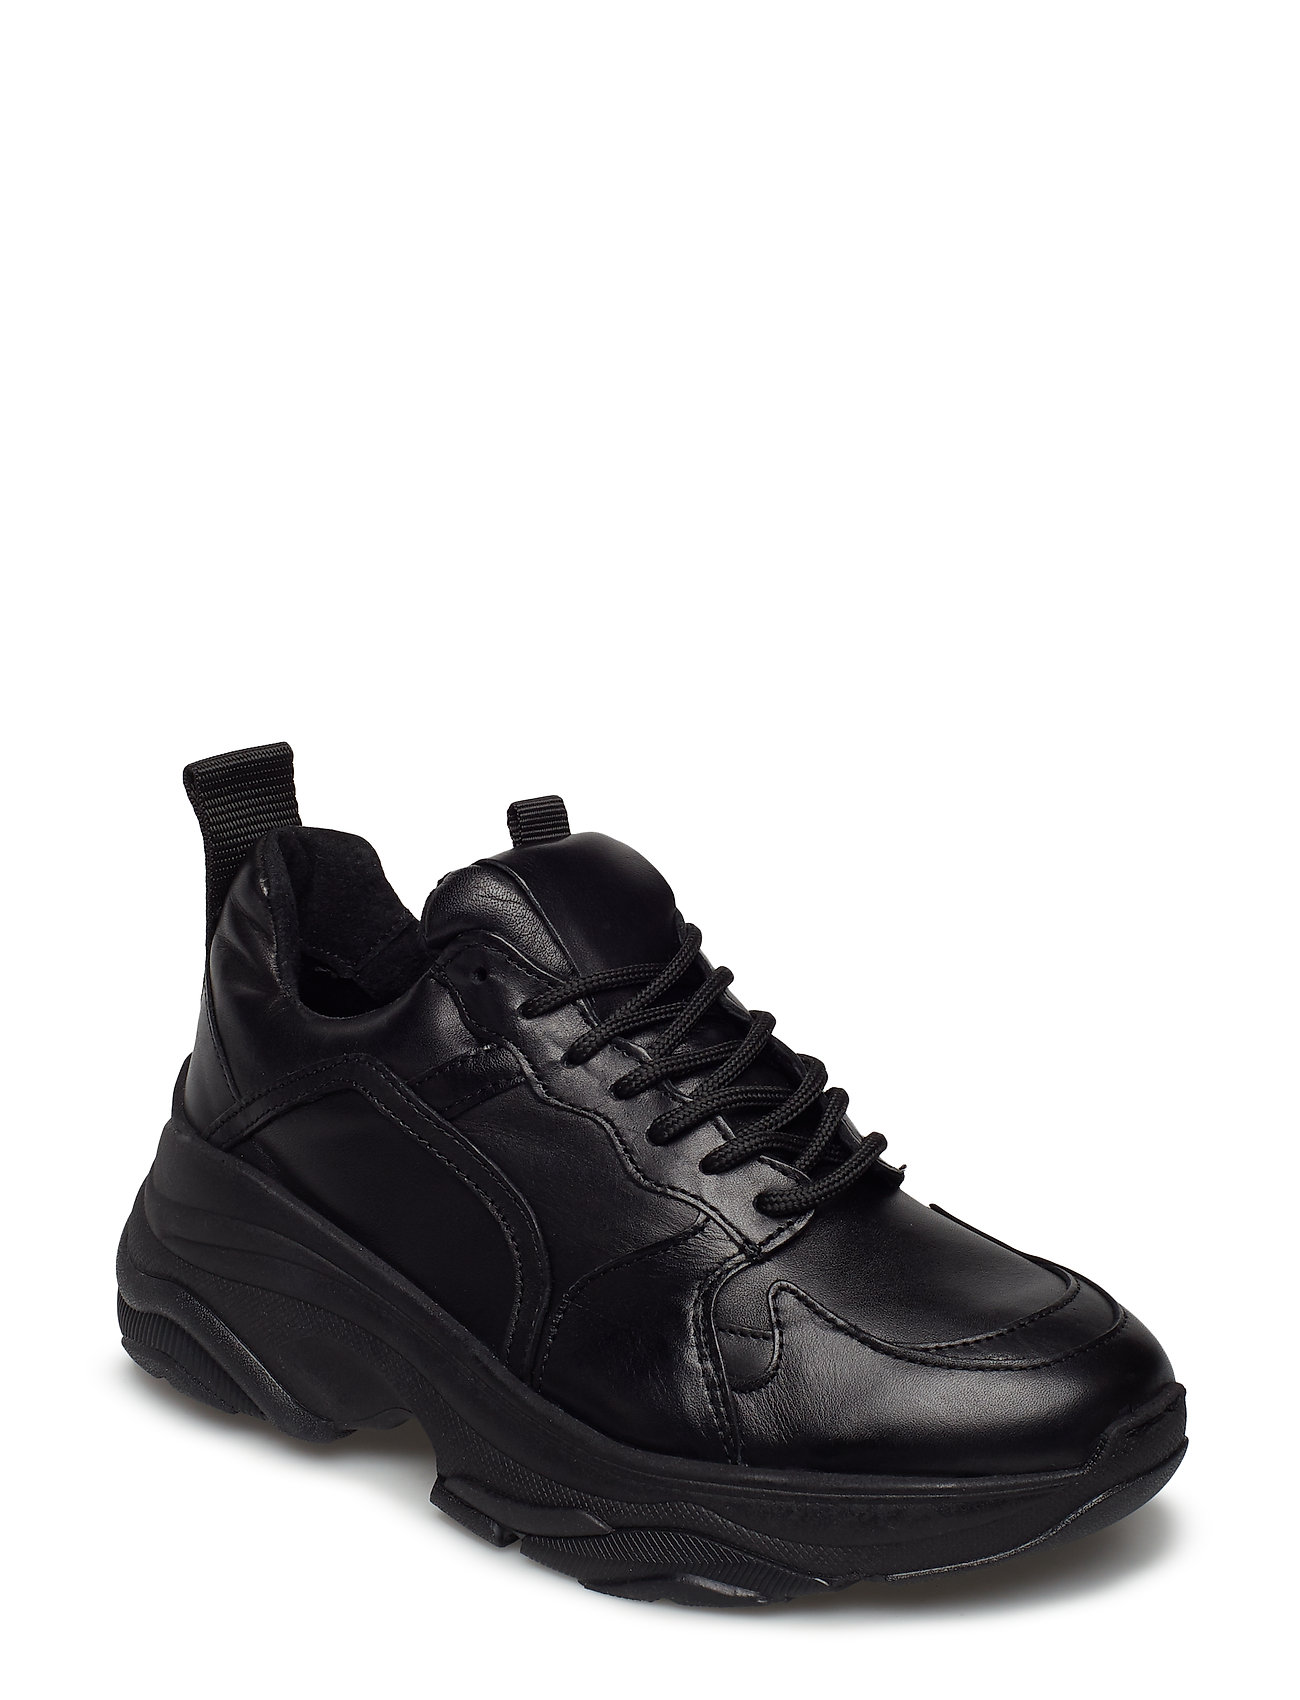 Mynthe Leather Matalavartiset Sneakerit Tennarit Musta Pavement